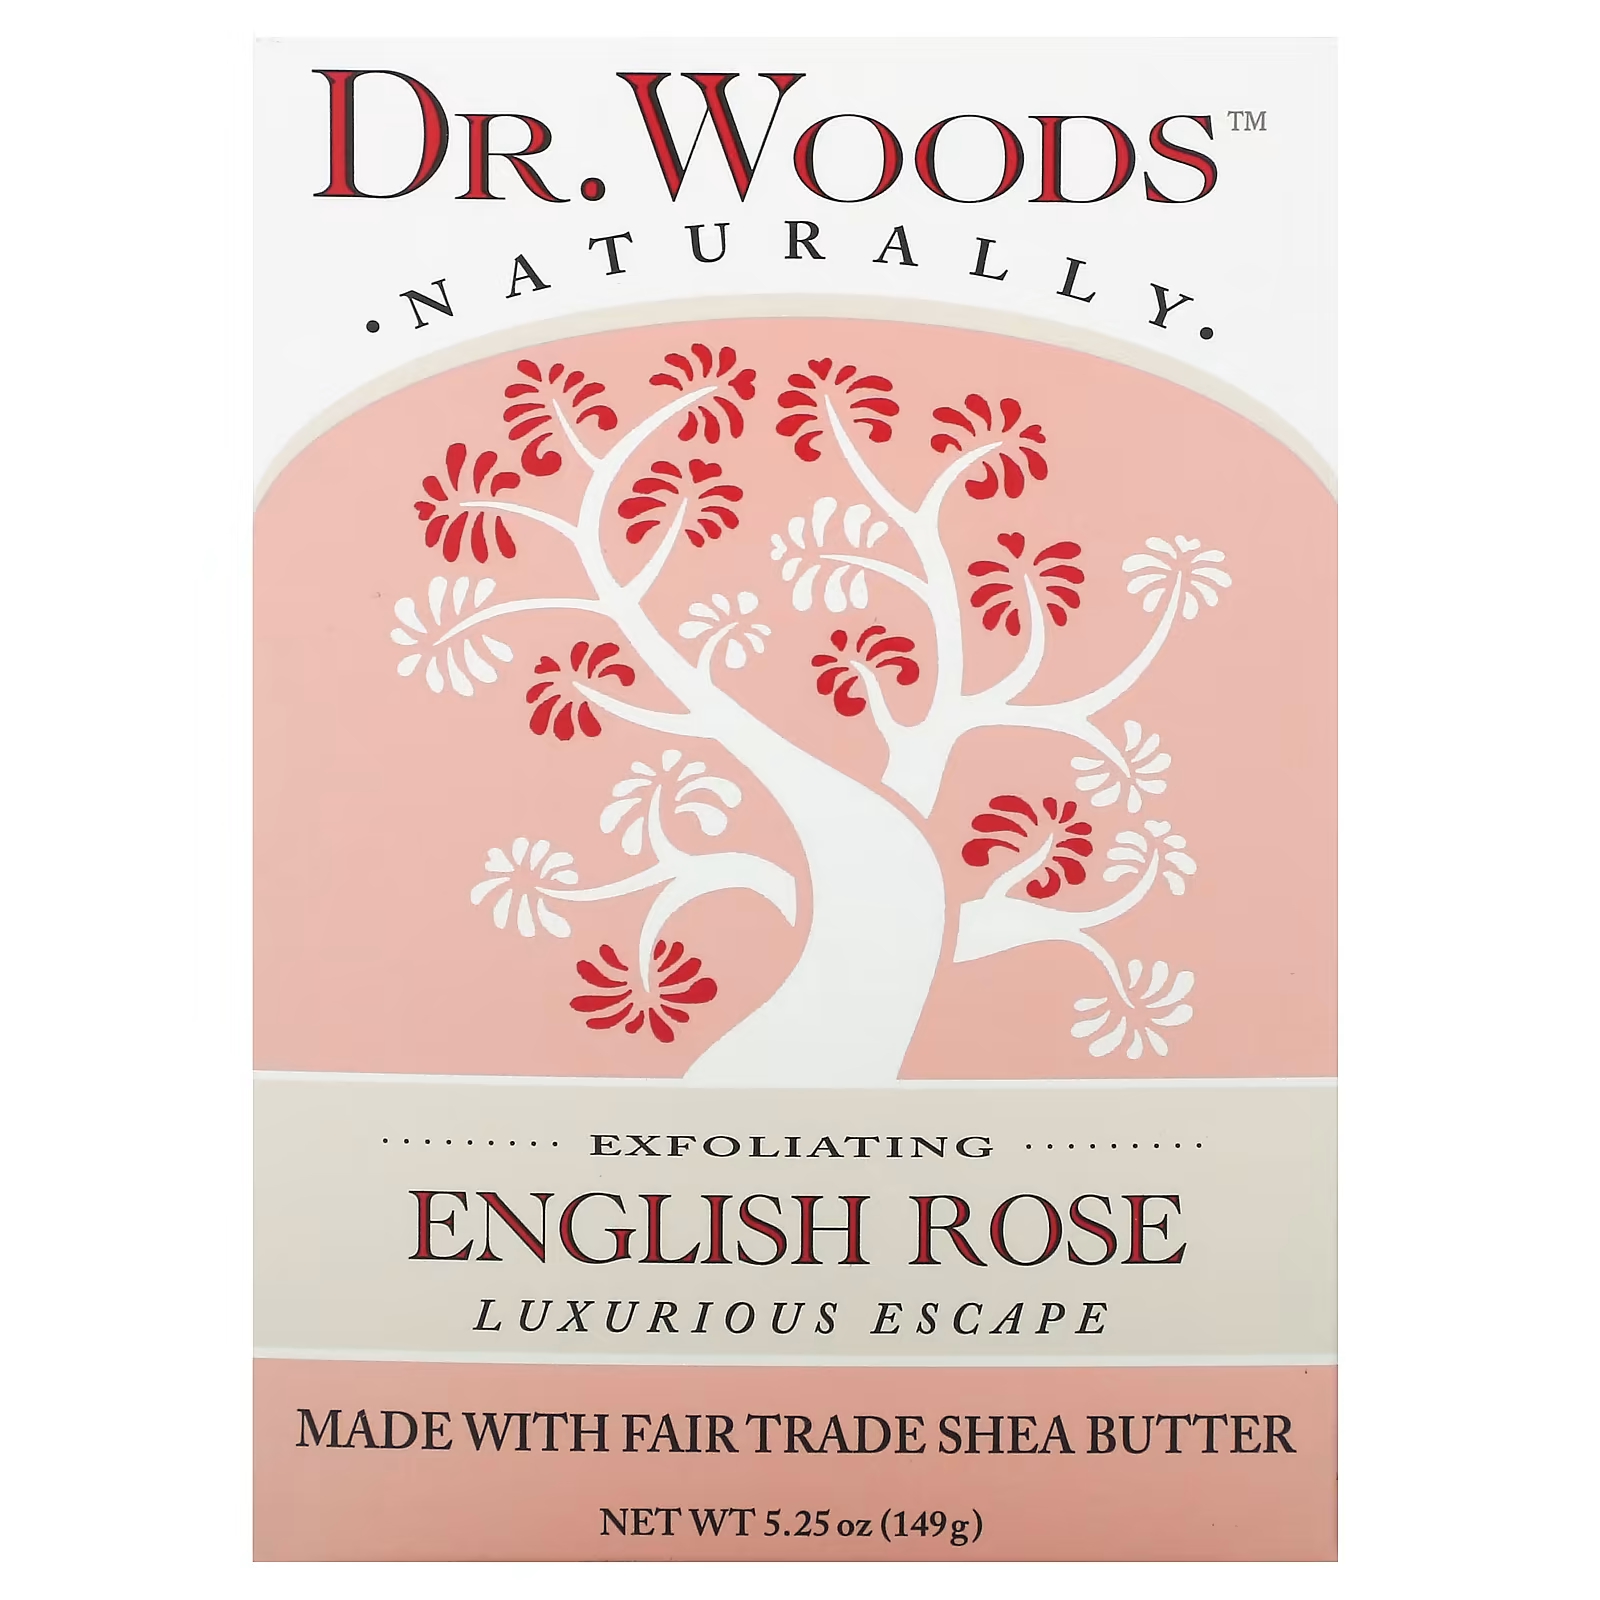 Woods Отшелушивающее мыло «Английская роза», 5,25 унции (149 г) Dr. Woods dr woods брусковое мыло кокосовое молоко 149 г 5 25 унции